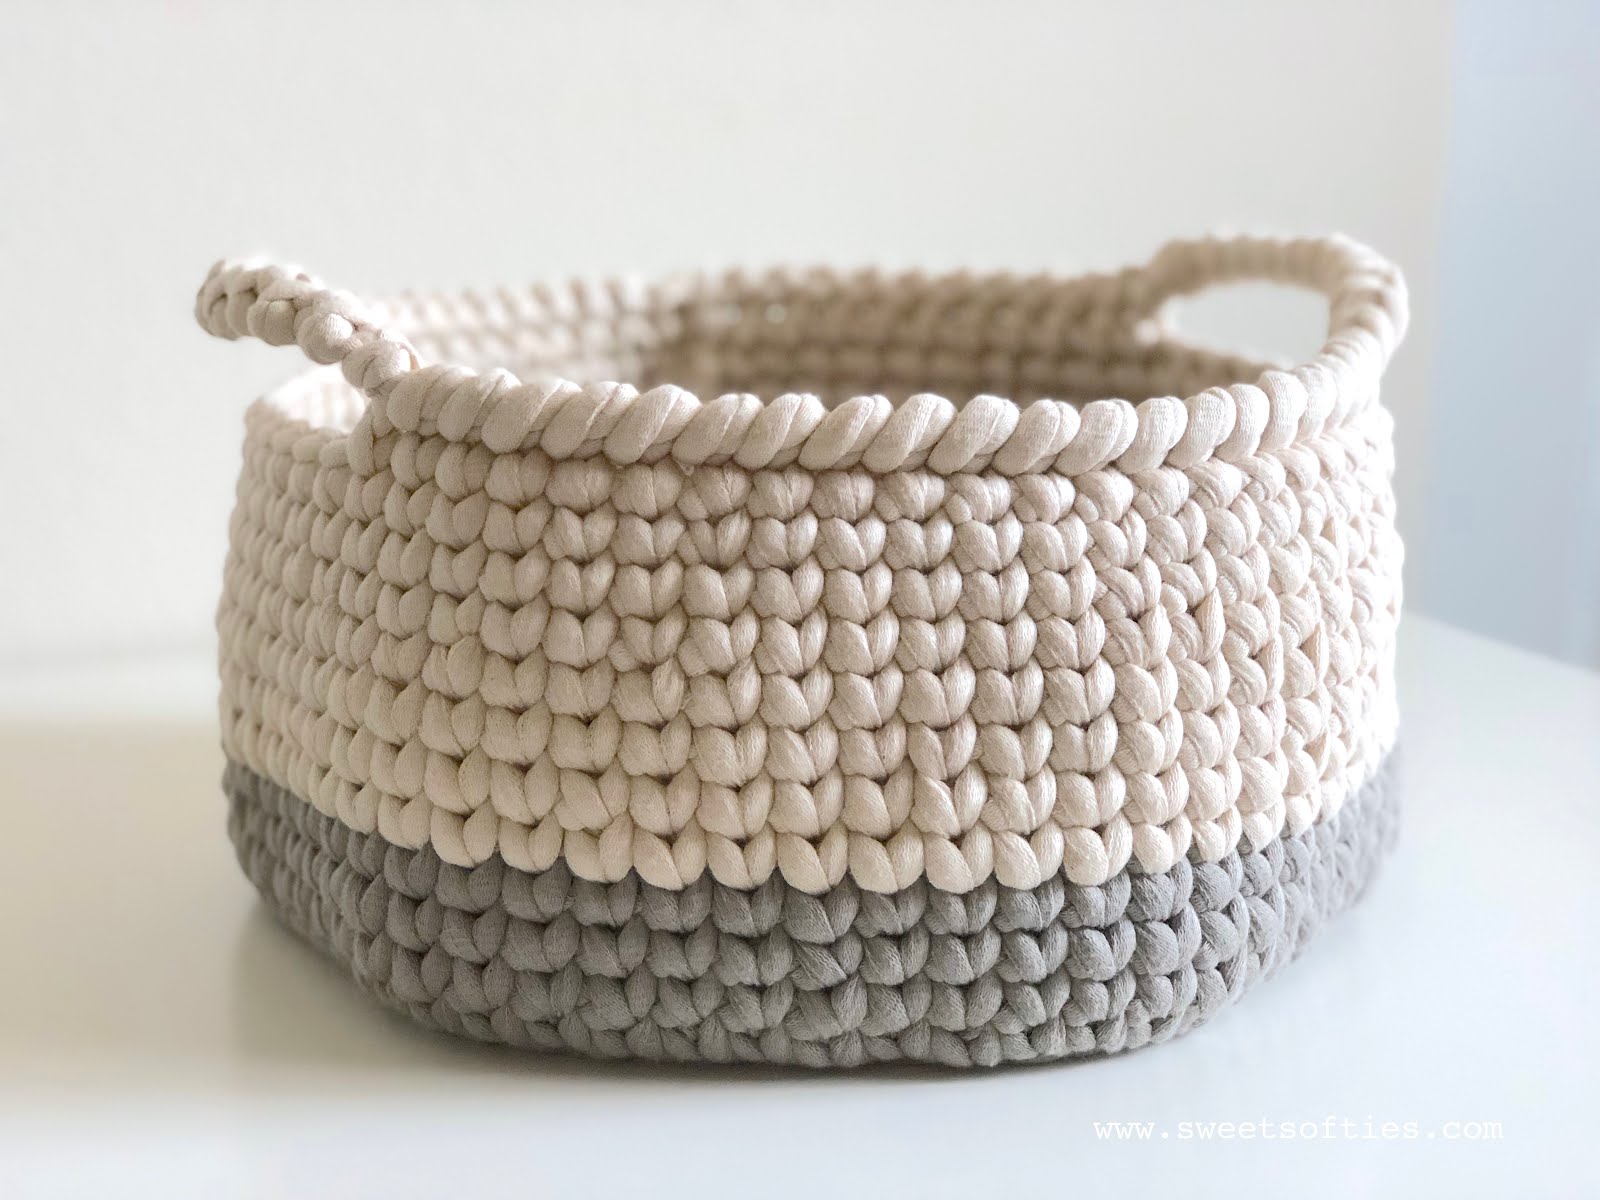 Your Giant Yarn Basket, Free Crochet Pattern